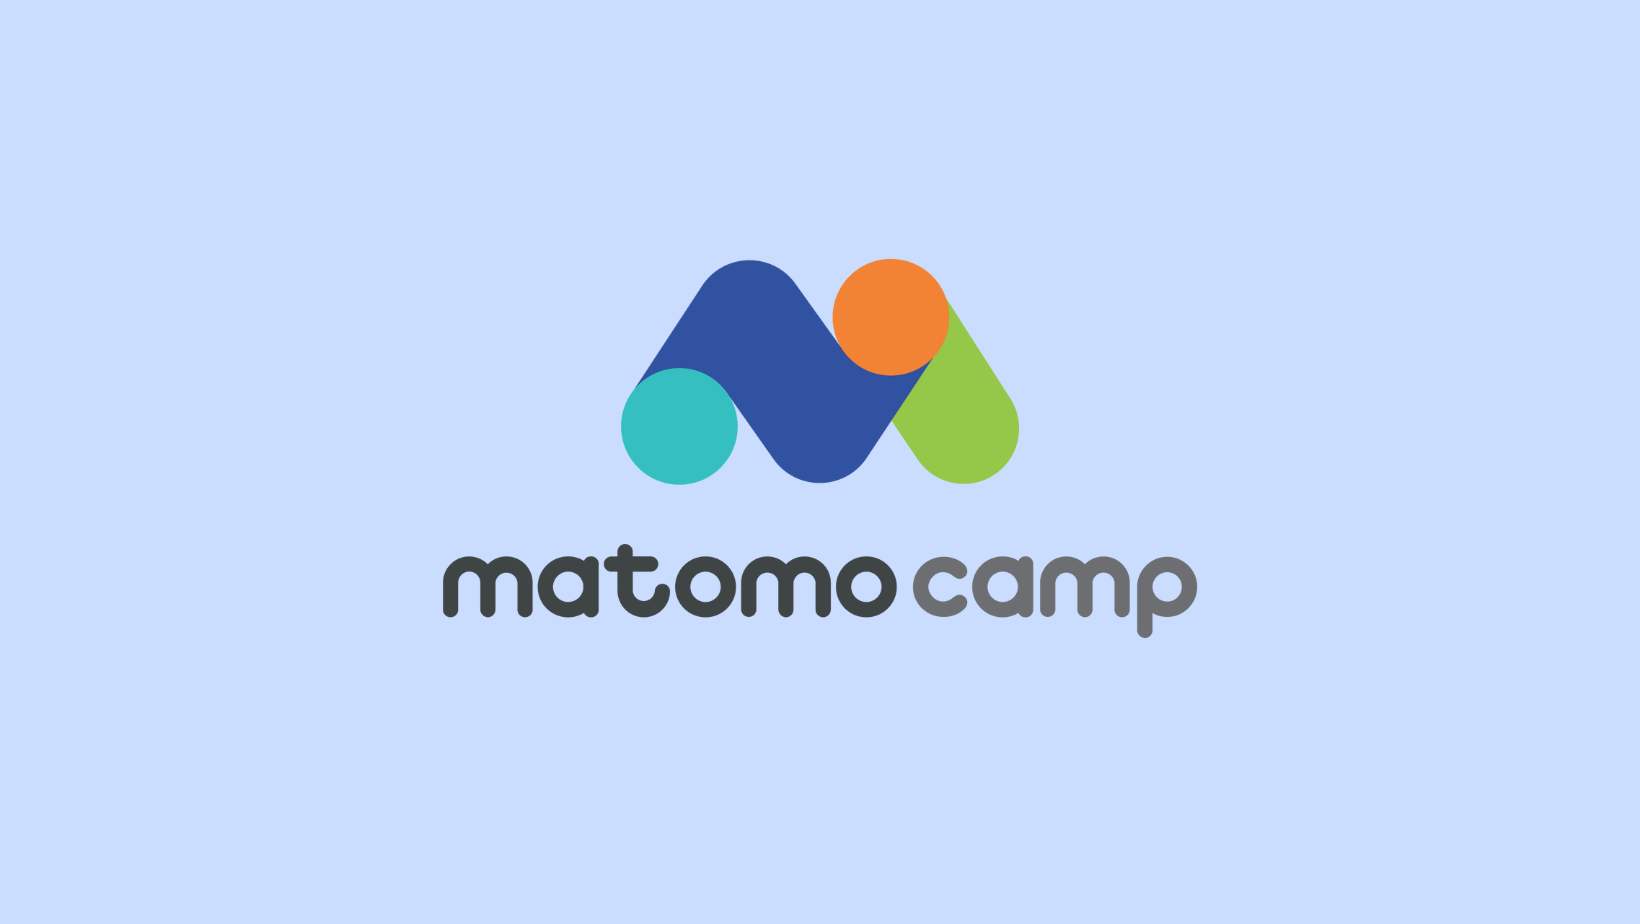 Join us at Matomo Camp